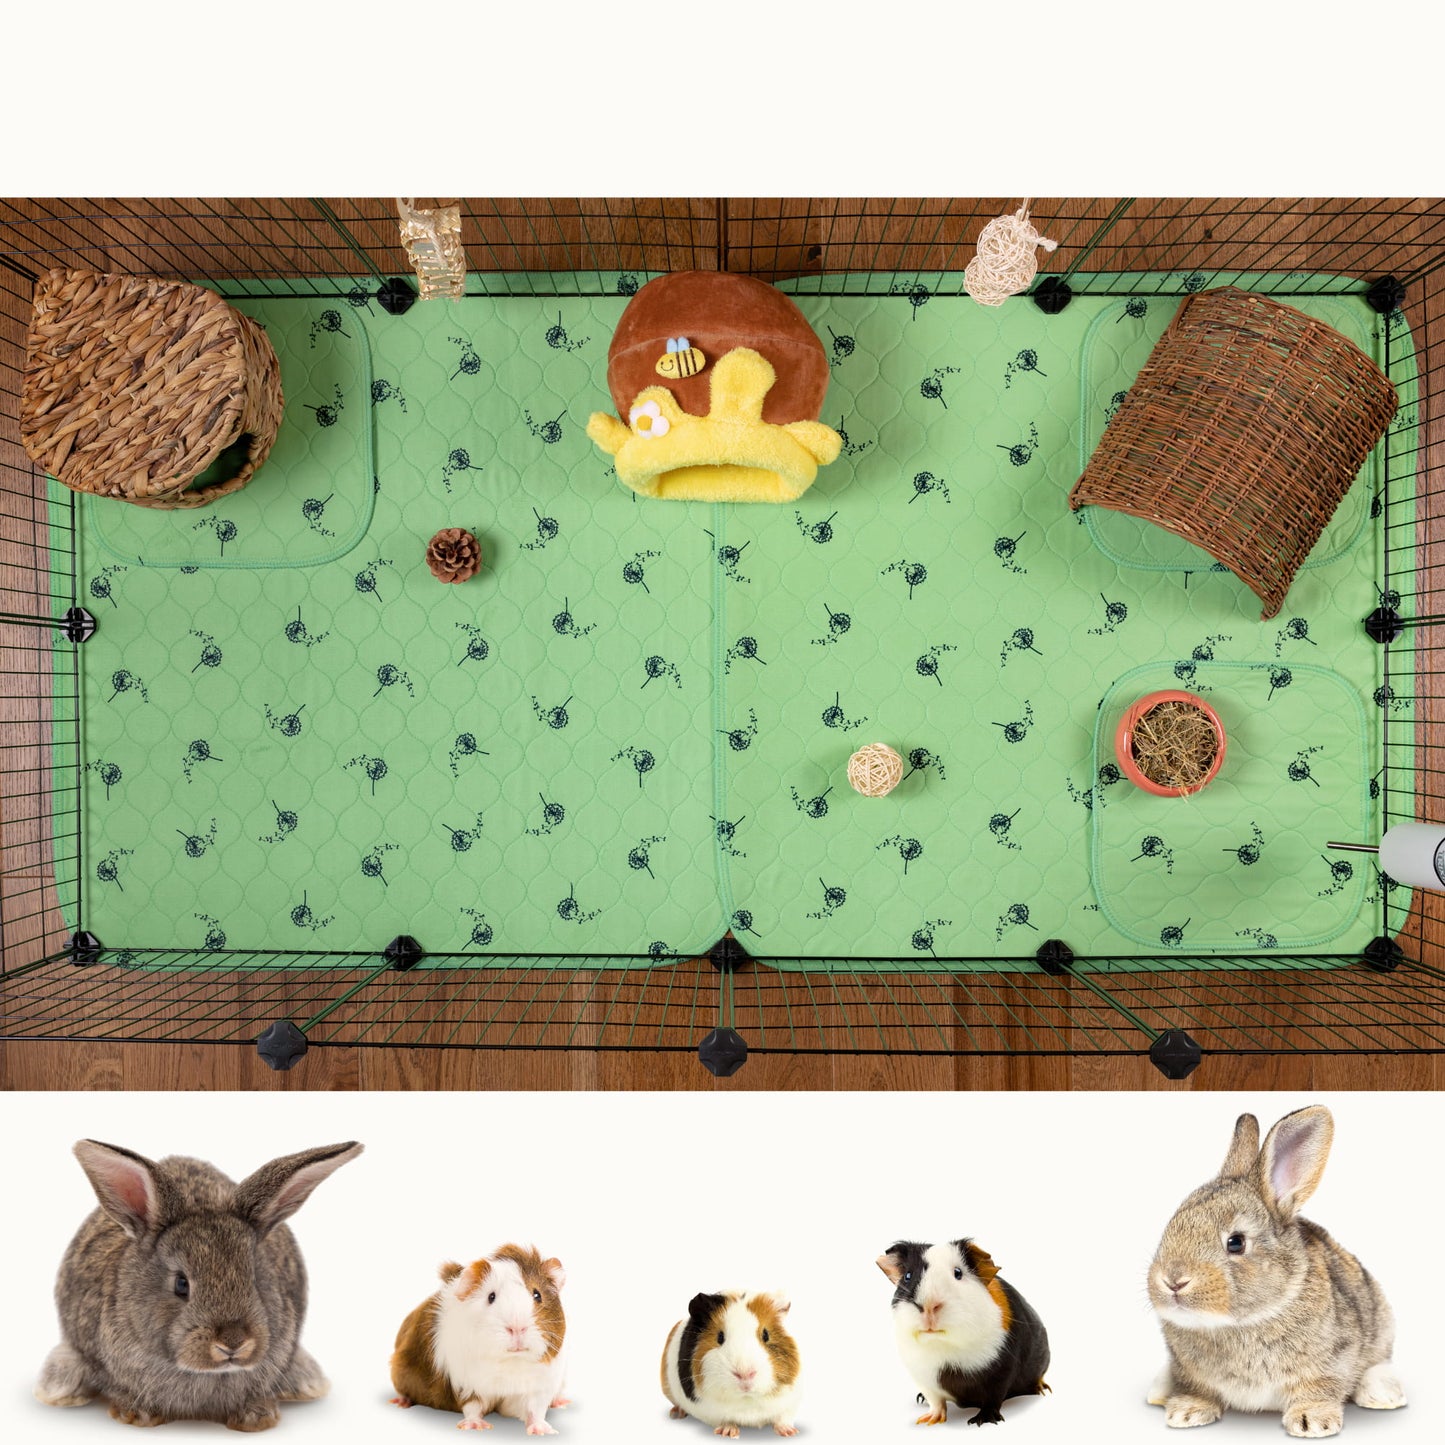 VANESTE cavia matten voor cavia kooi - bodembedekking knaagdieren en konijnen